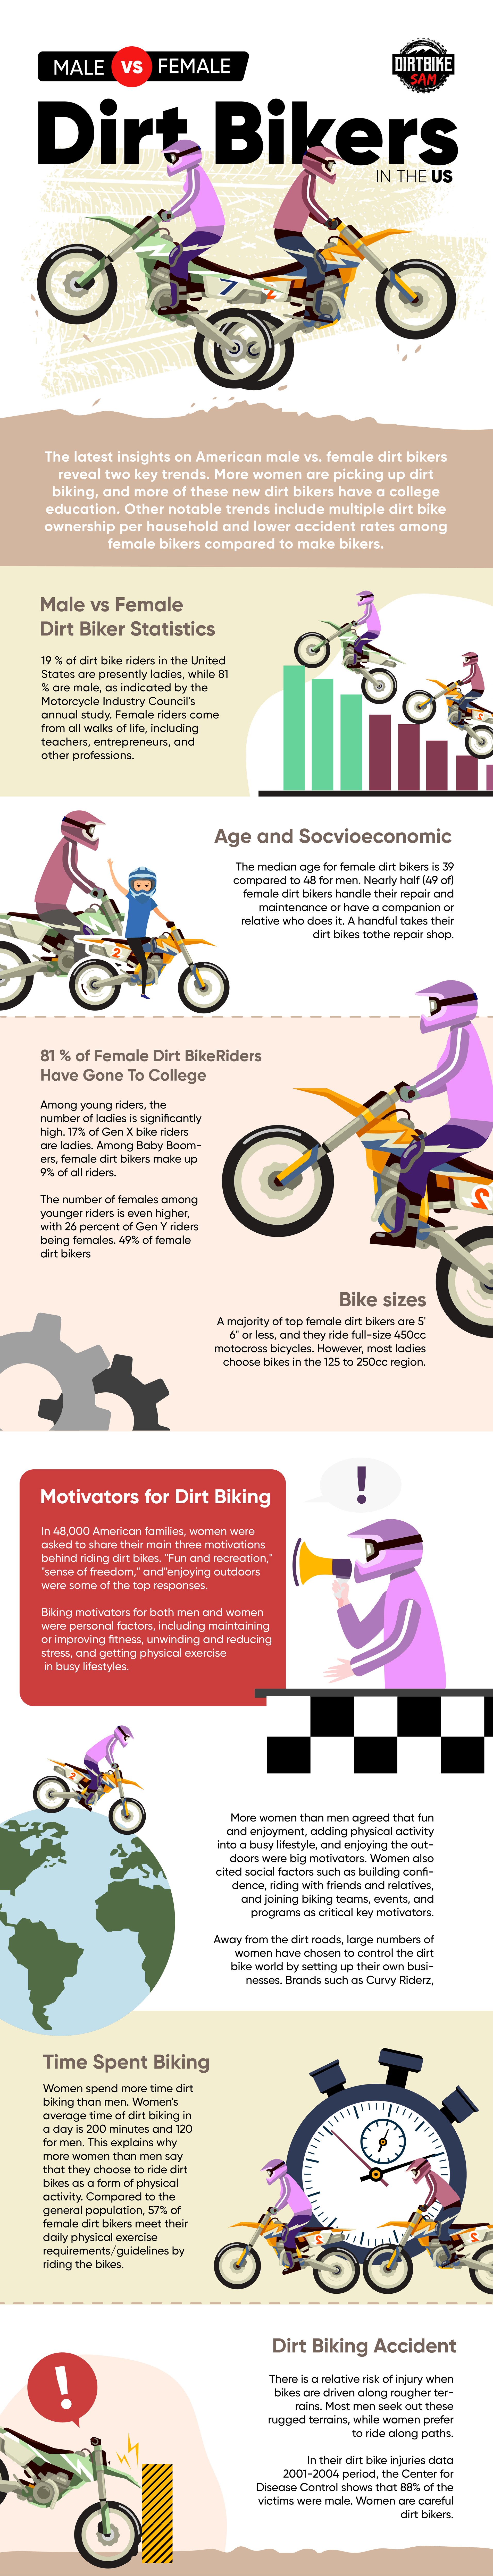 Male vs Female Dirt Bike Riders